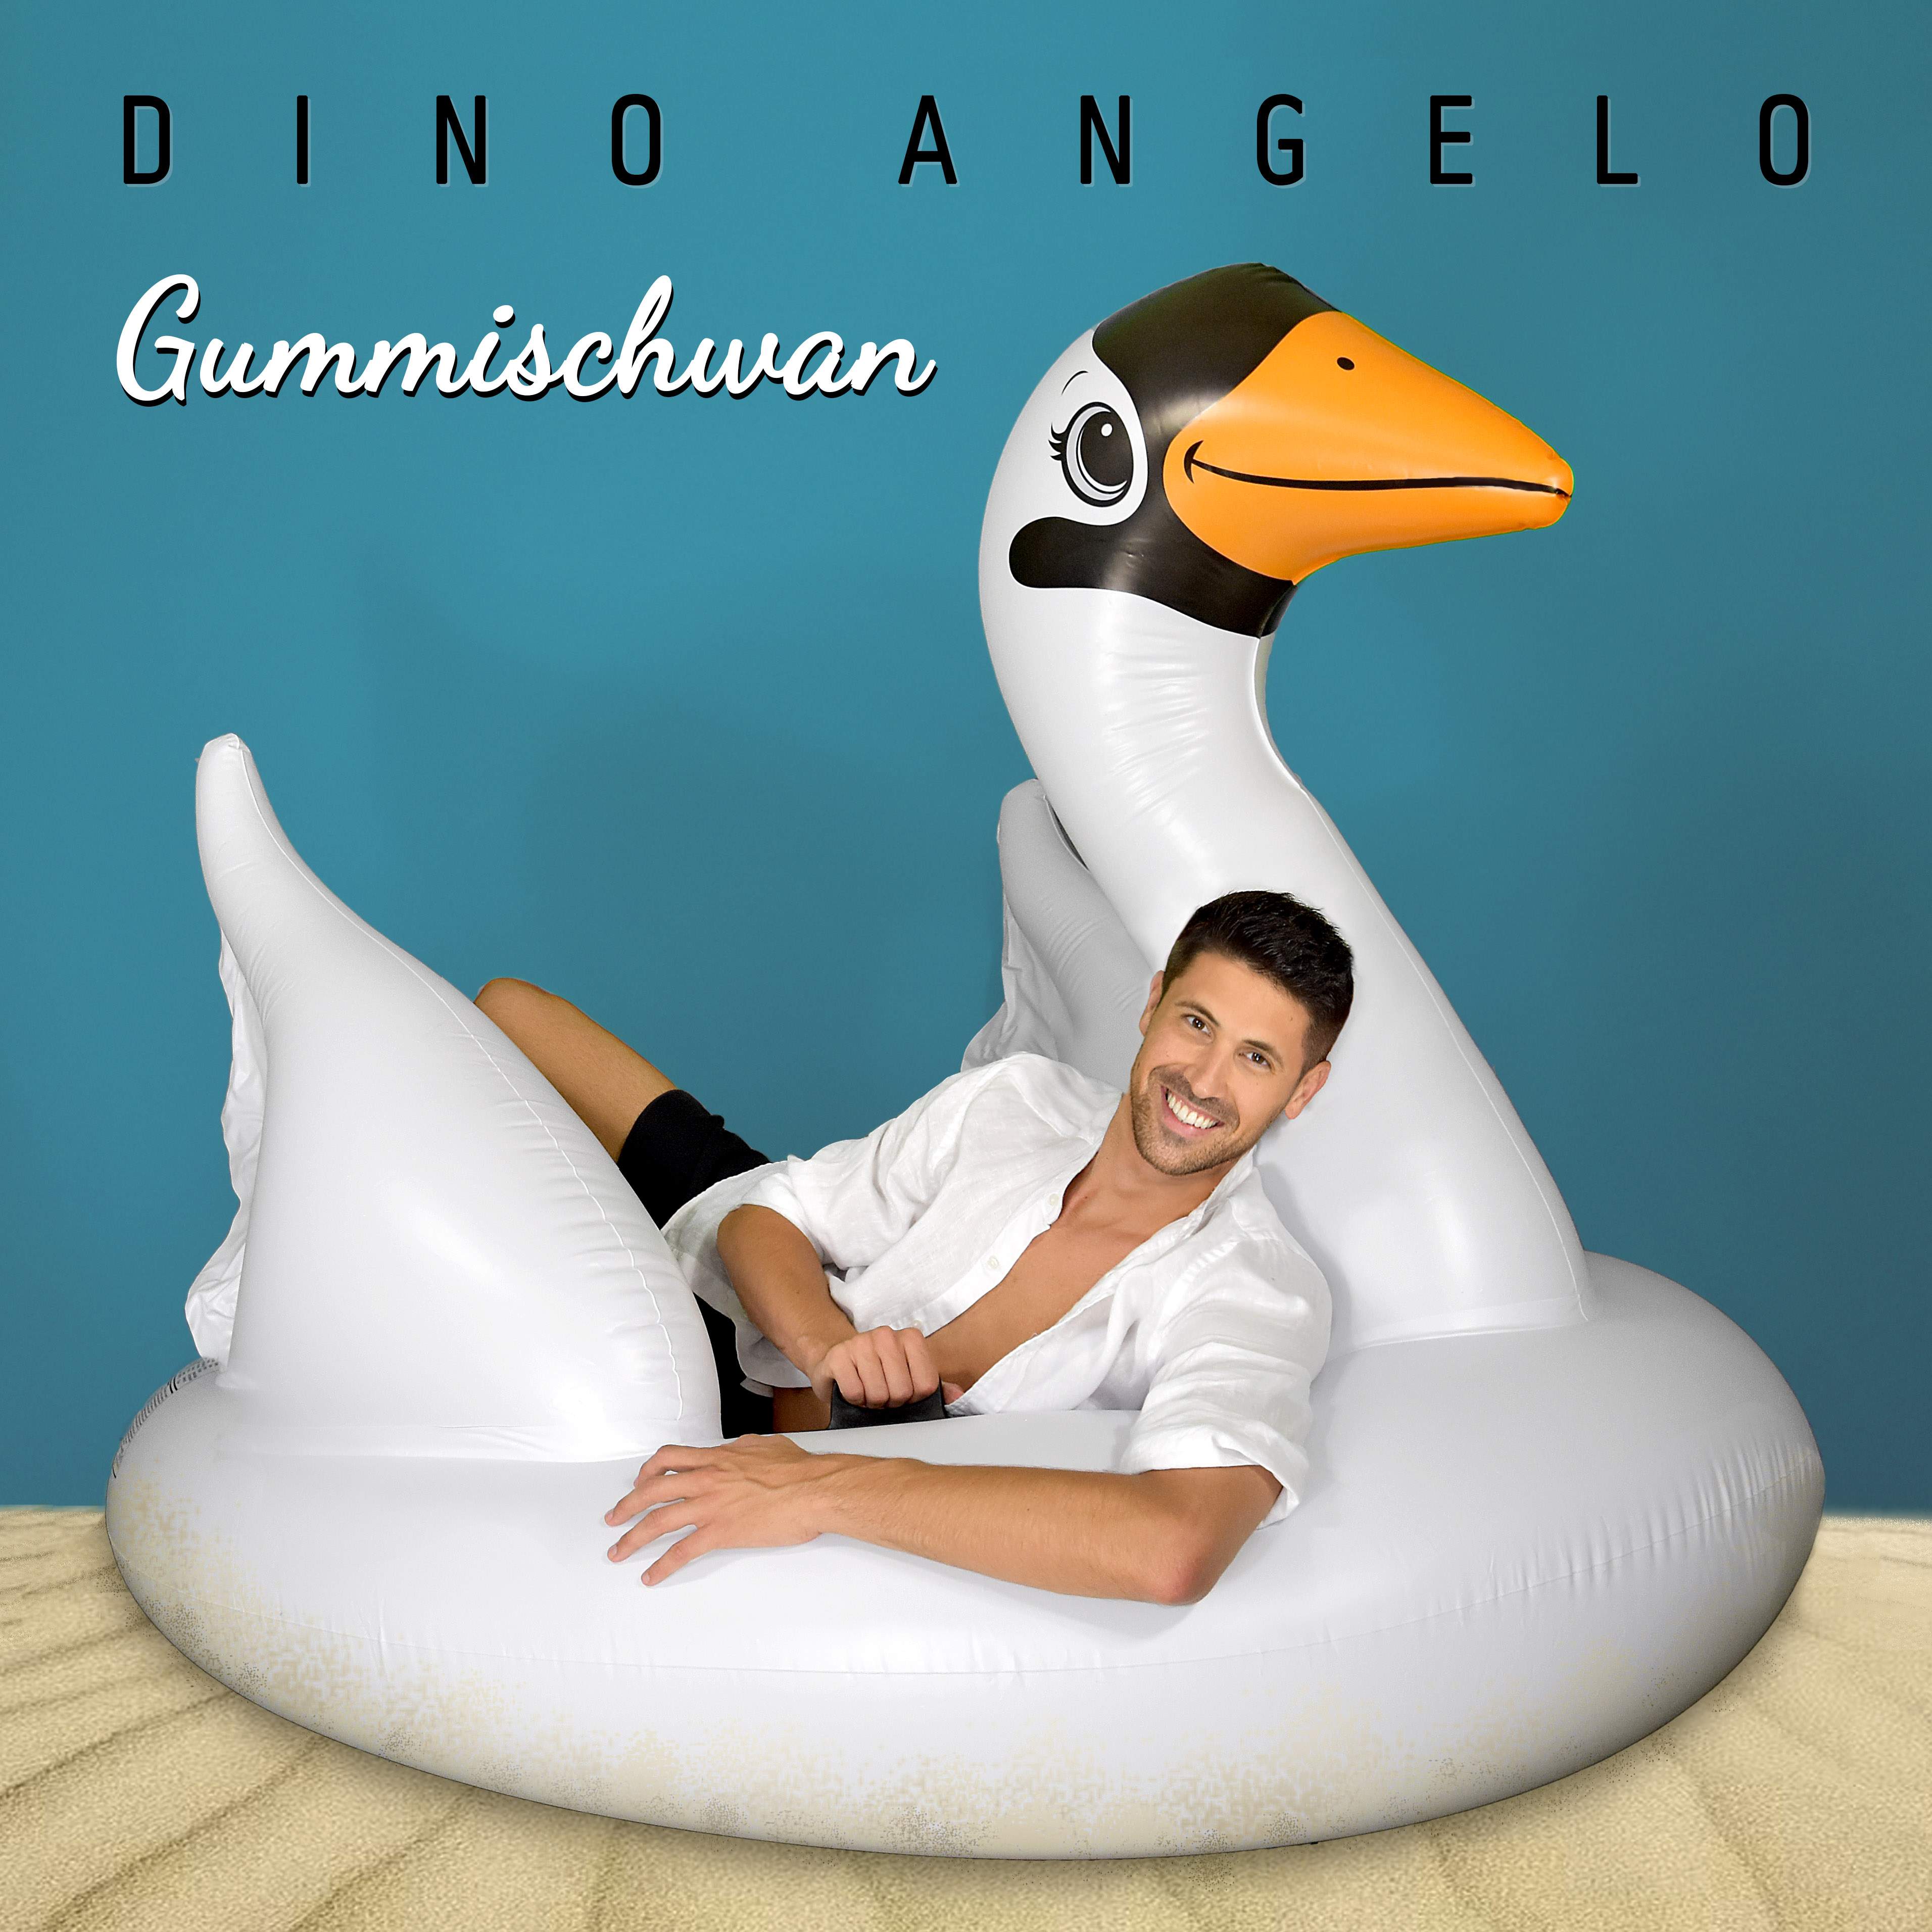 Cover-Bild der Single "Gummischwan"